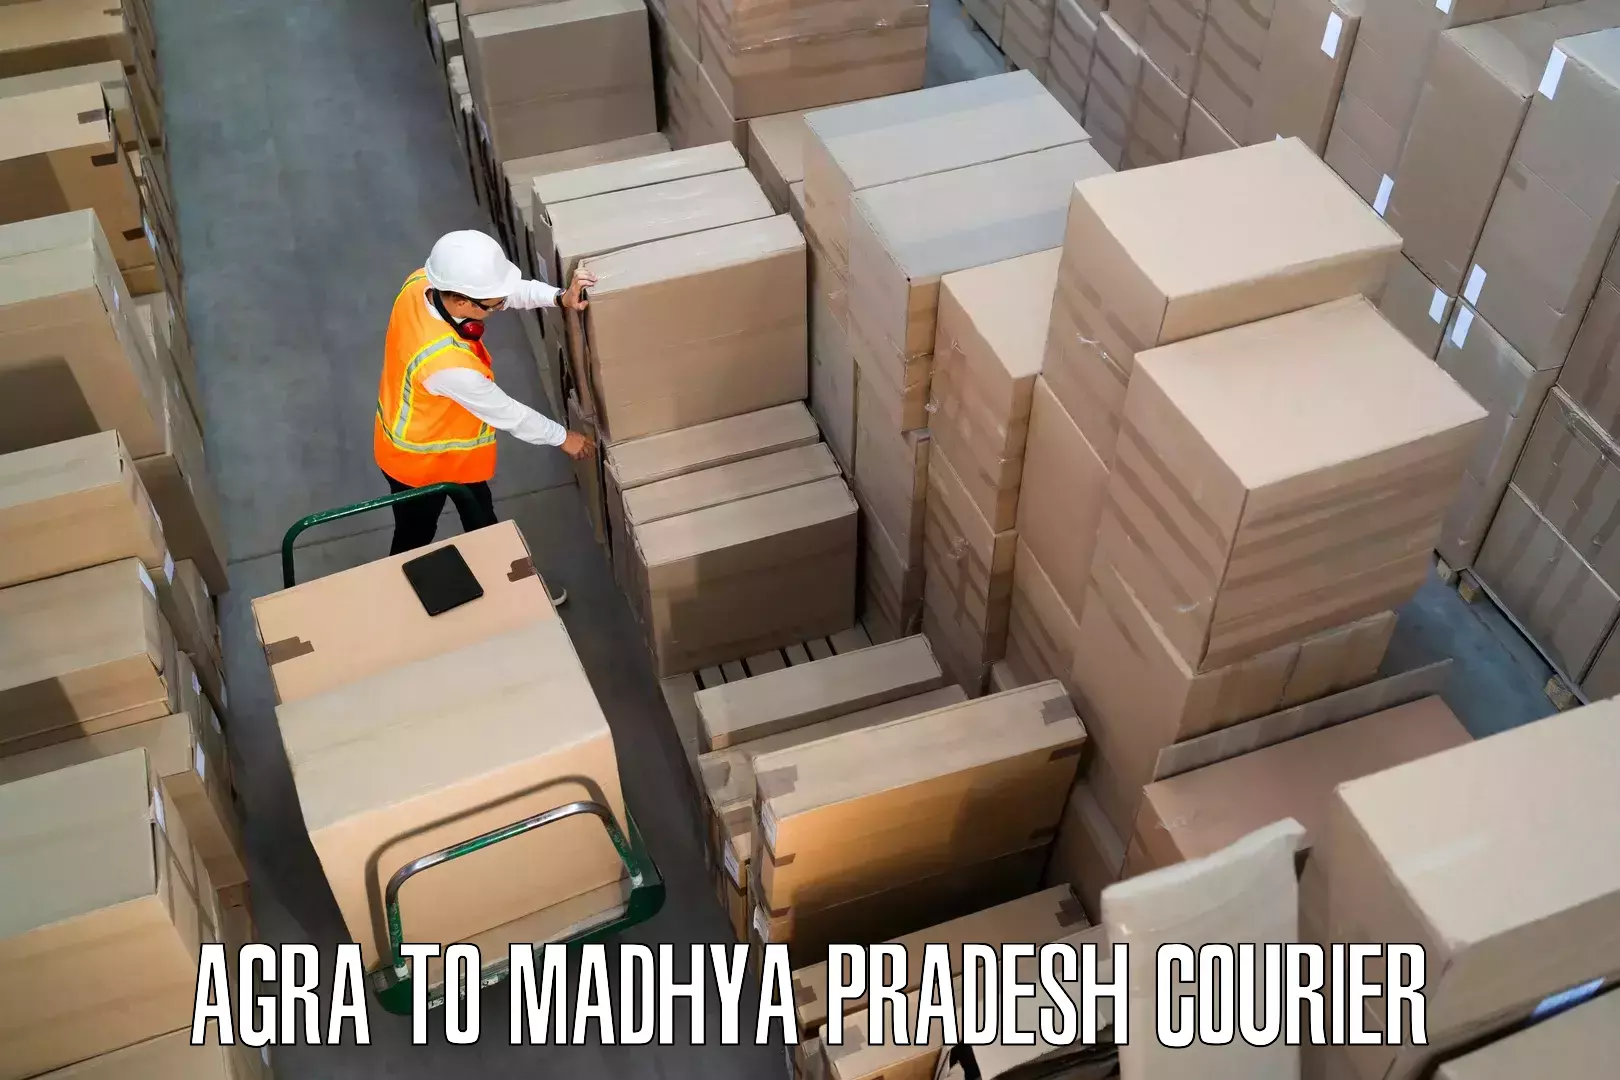 Furniture transport experts in Agra to Amarwara